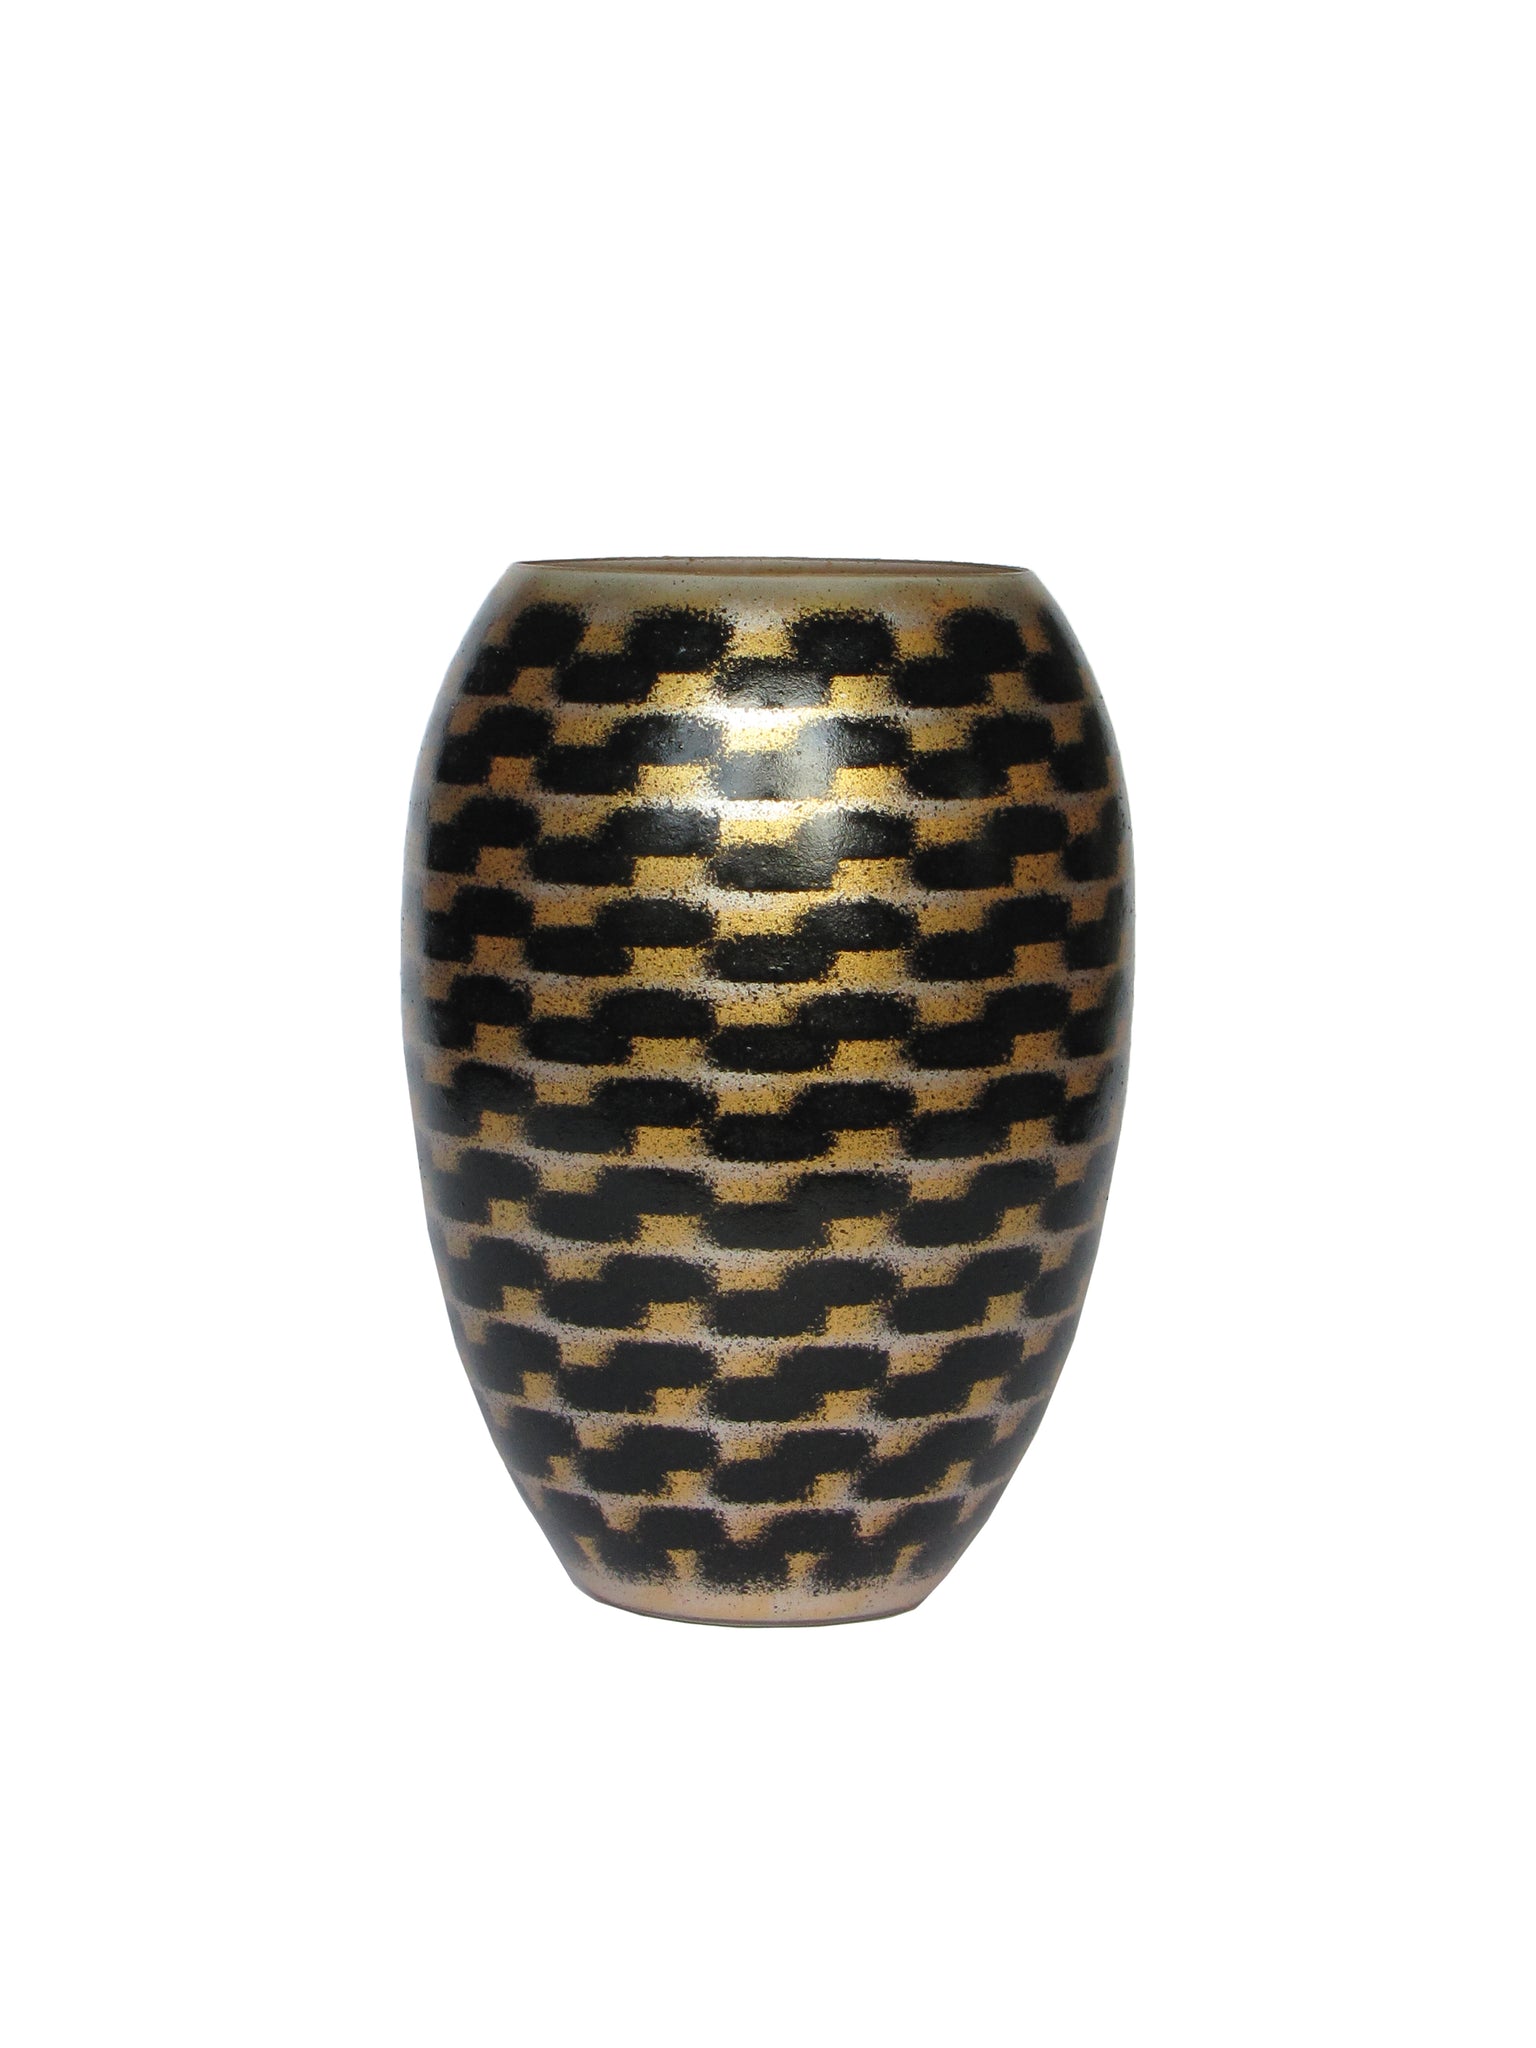 RIVER Barrel MED, Gold-Black & Silver, 18 cm / 7,1”